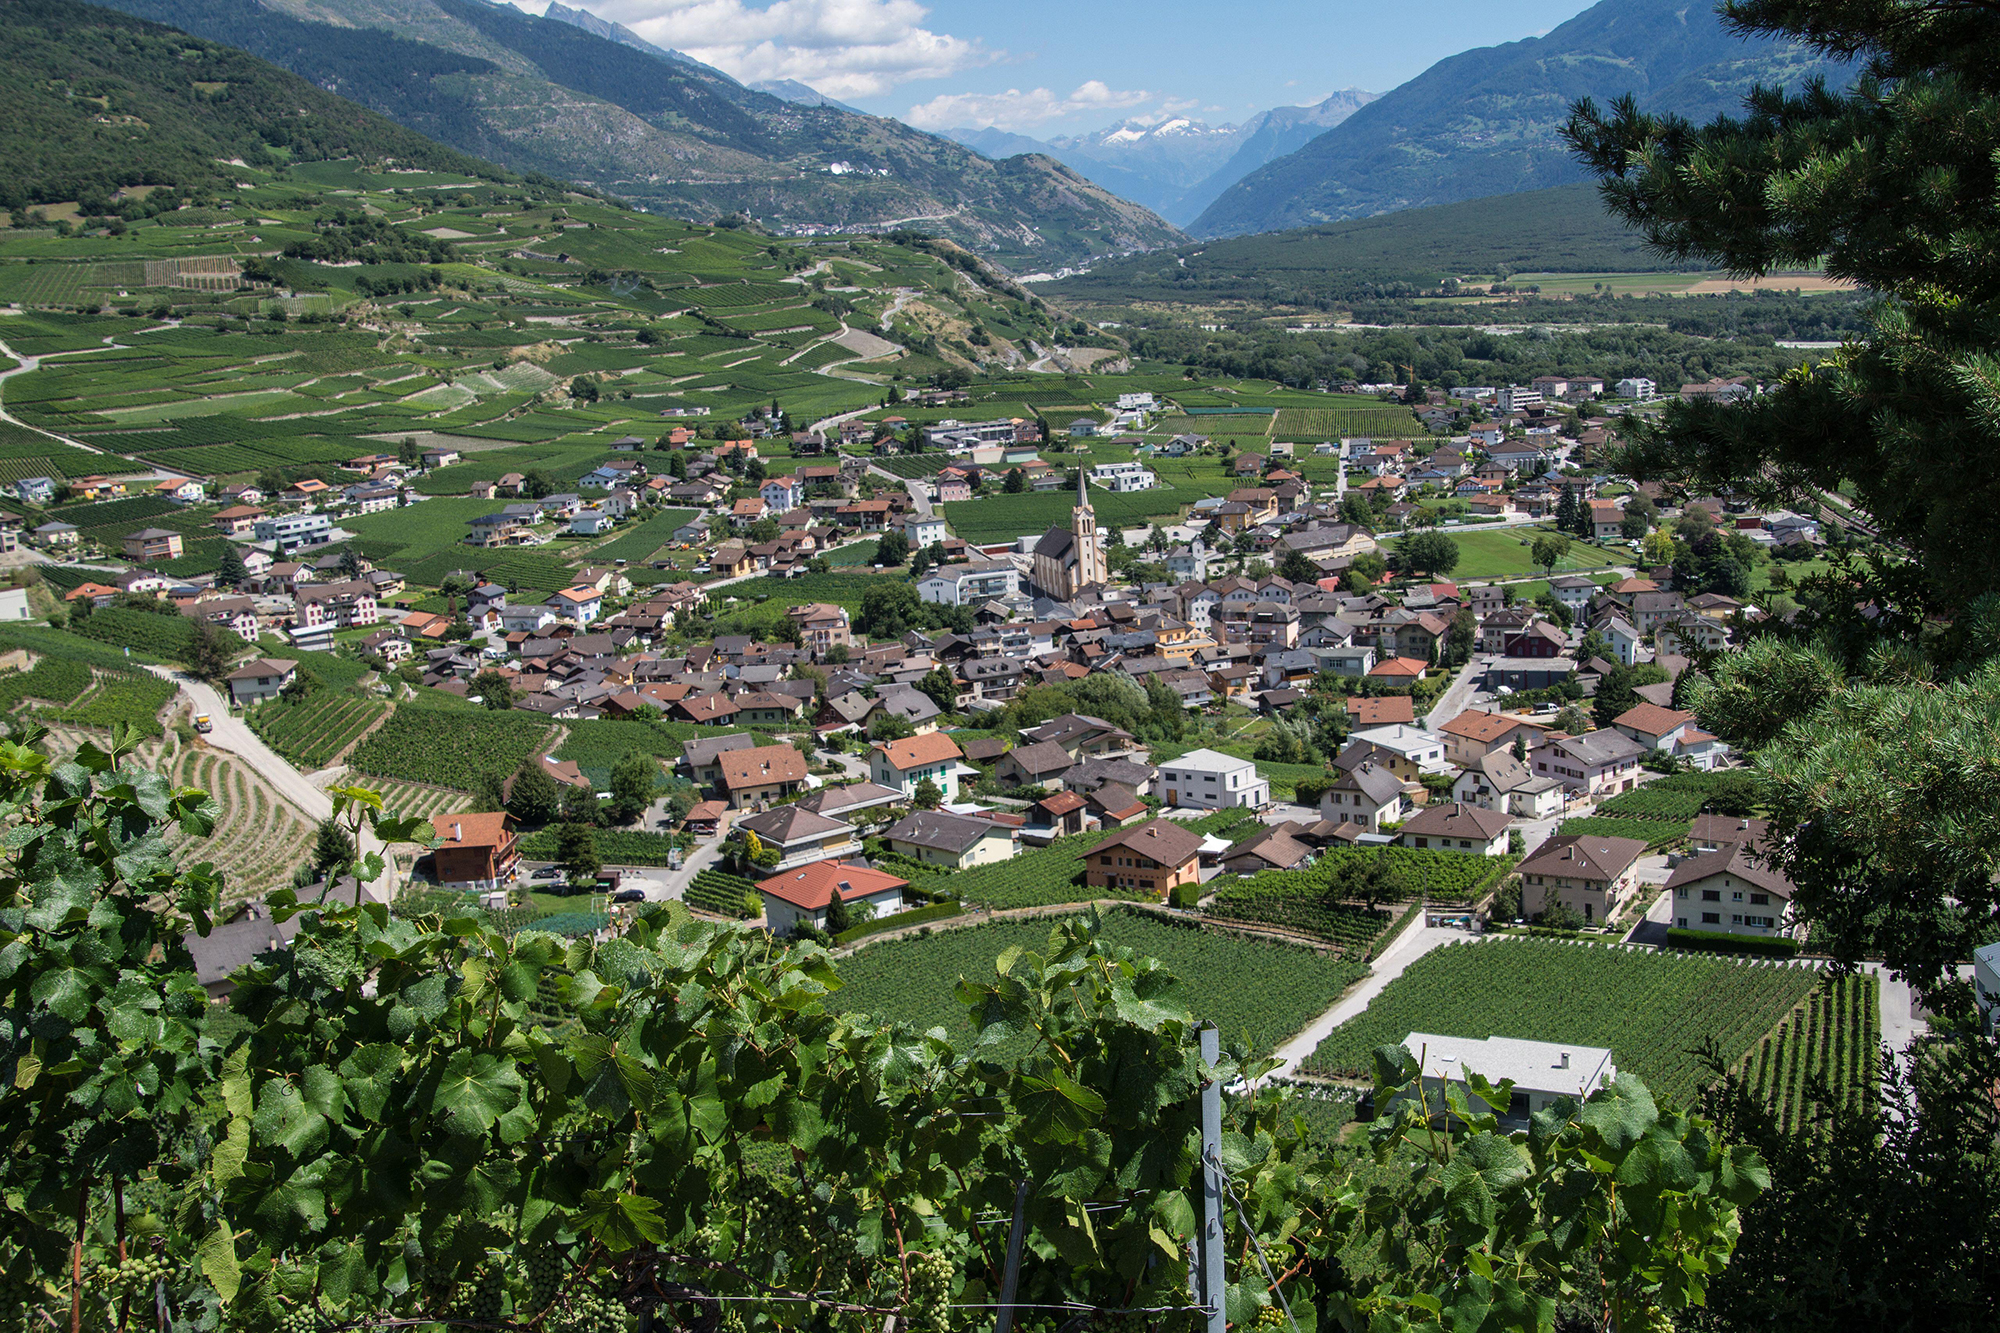 ザルゲッシュ村（フランス語でサルケネン）は、スイスでも有数のワイン産地だ